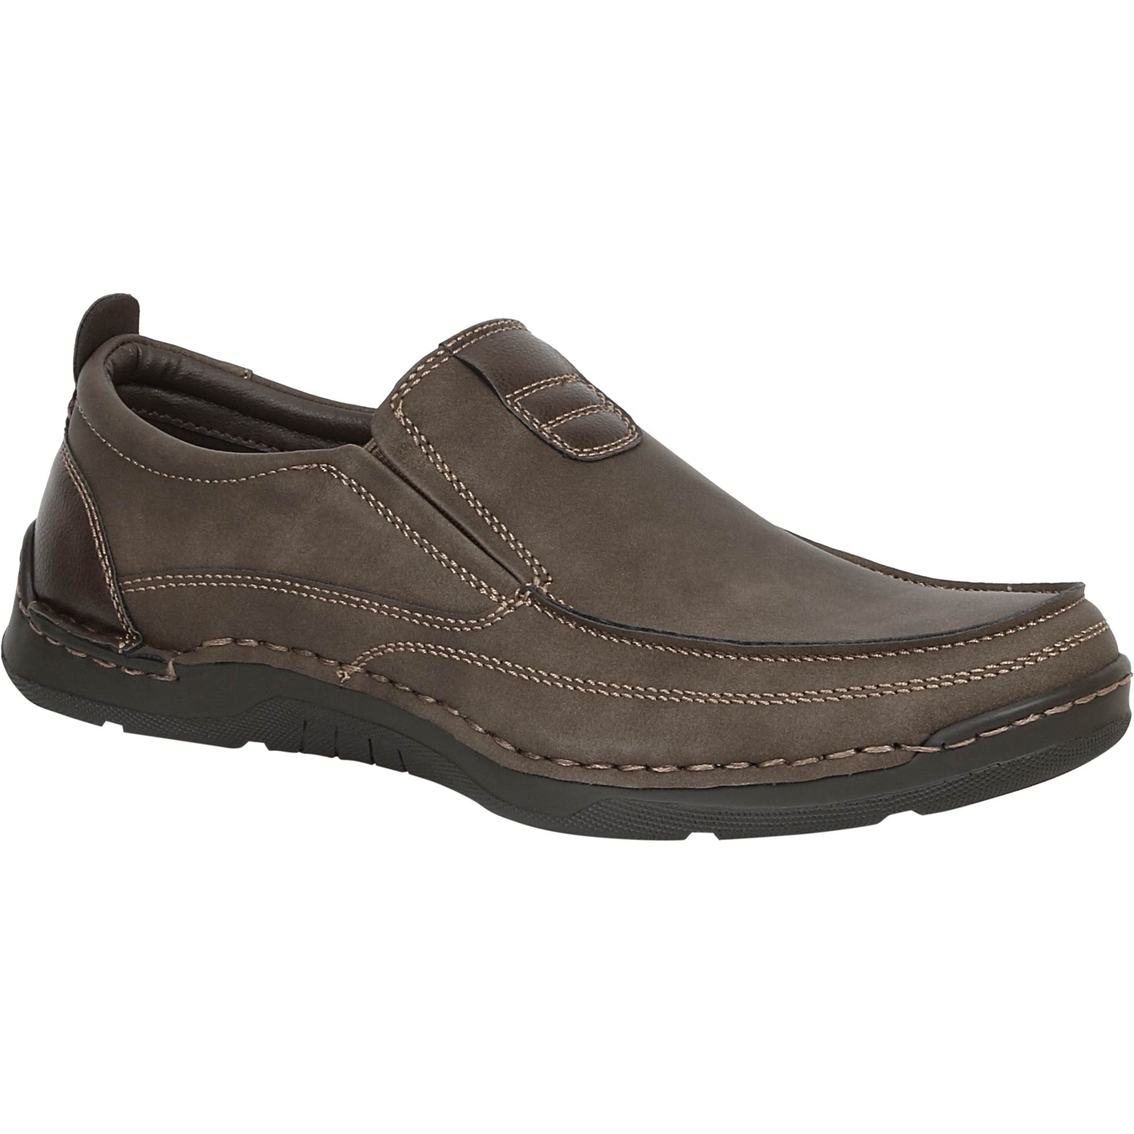 Izod Men's Forman Double Gore Slip-on Shoes | Casuals | Shoes | Shop ...